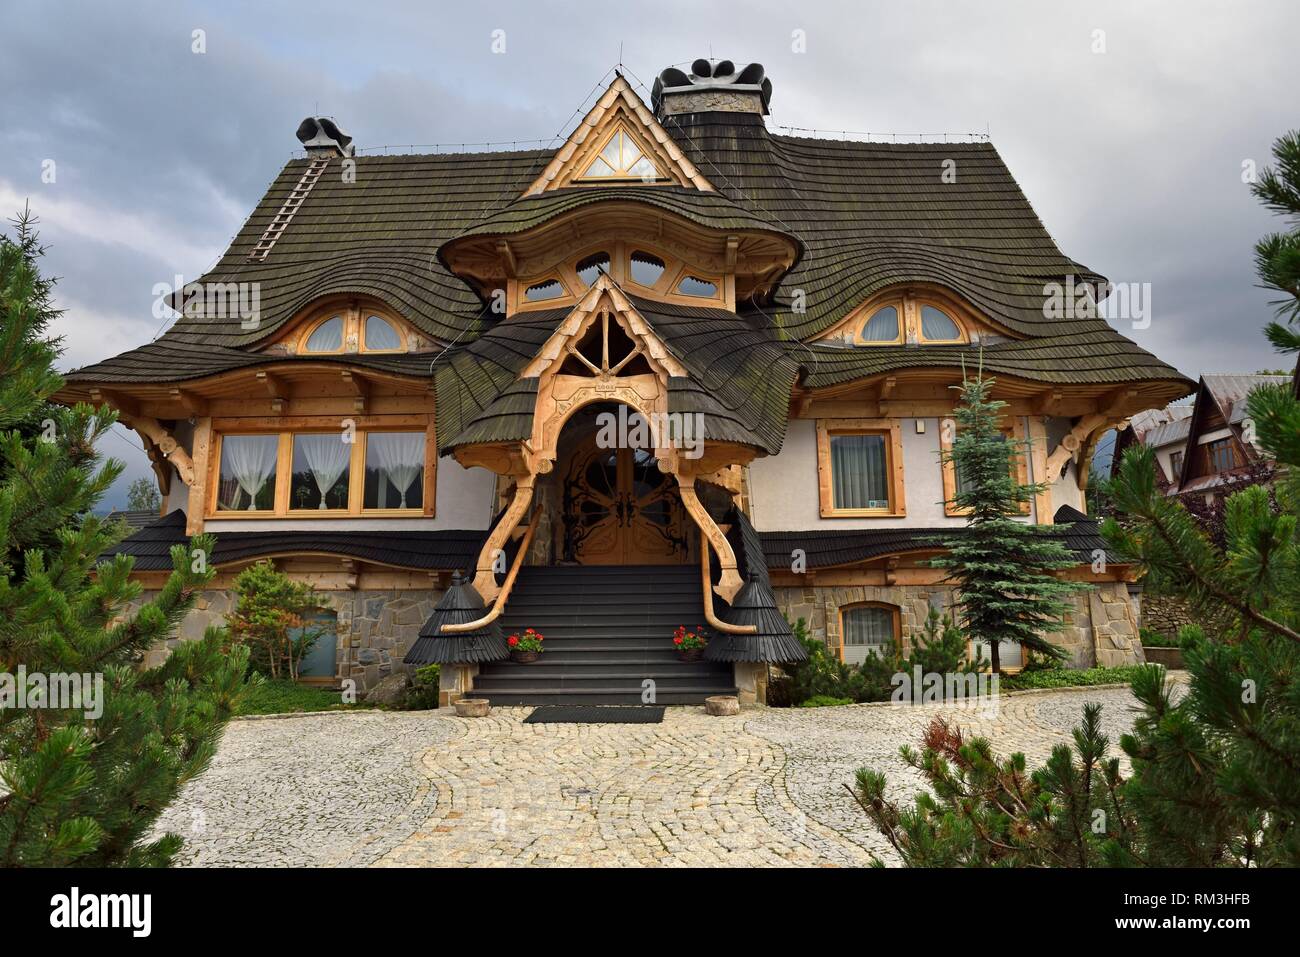 Maison Moderne de style Zakopane revisite, Zakopane, Region Podhale, Massif des Tatra, Provinz Malopolska (Petite Pologne), Pologne, Europa Stockfoto